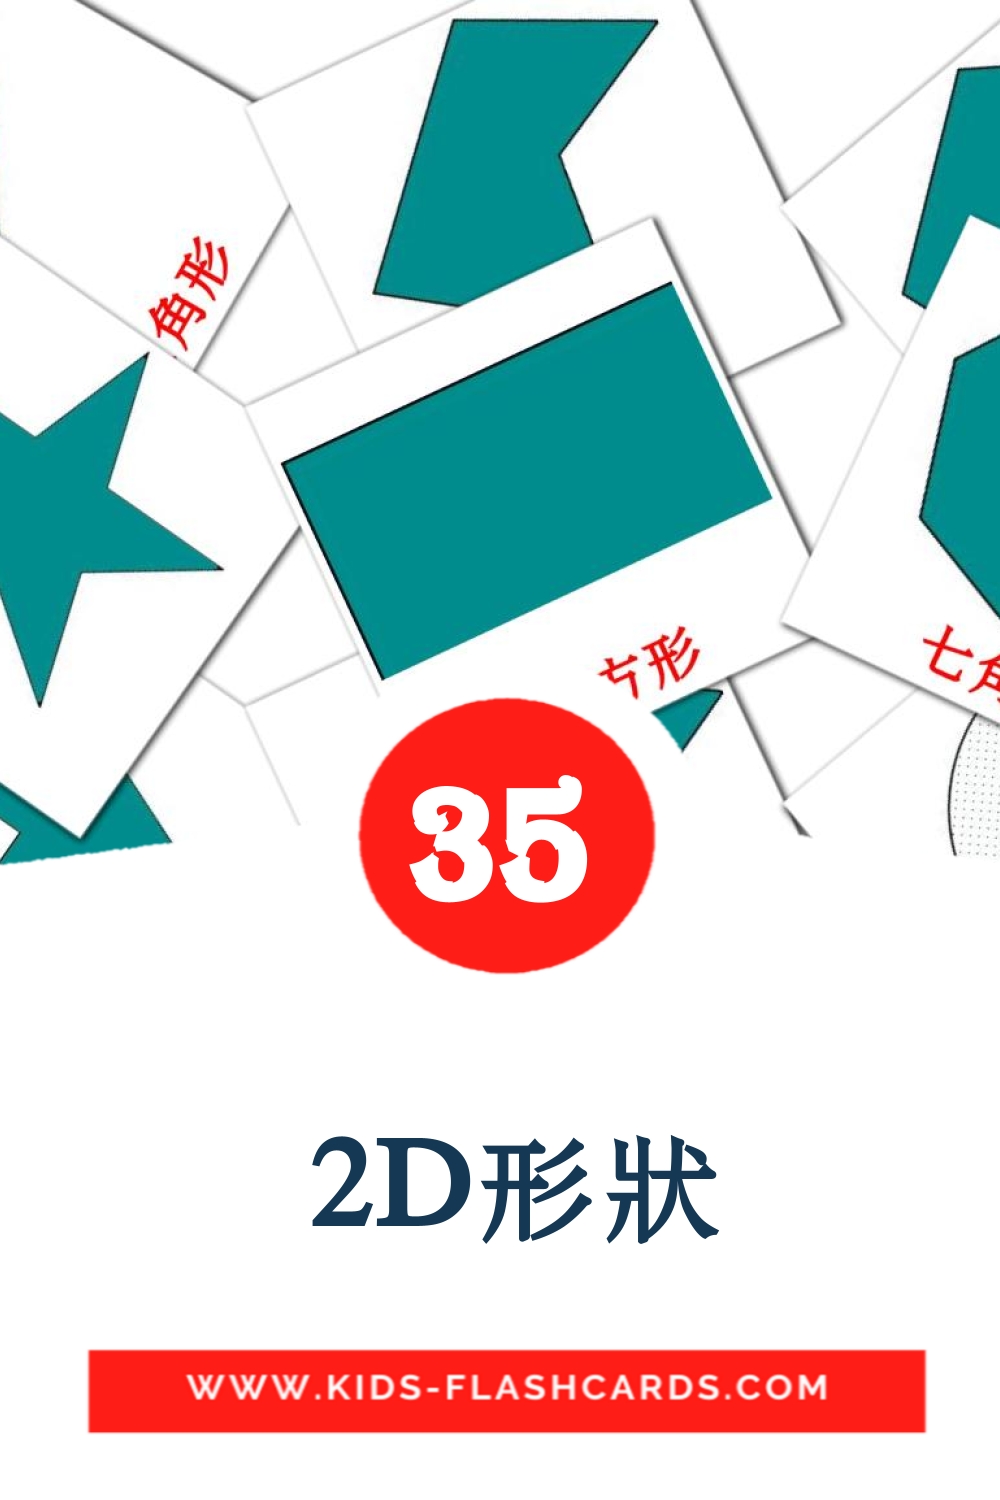  2D形狀 на китайский(Традиционный) для Детского Сада (35 карточек)